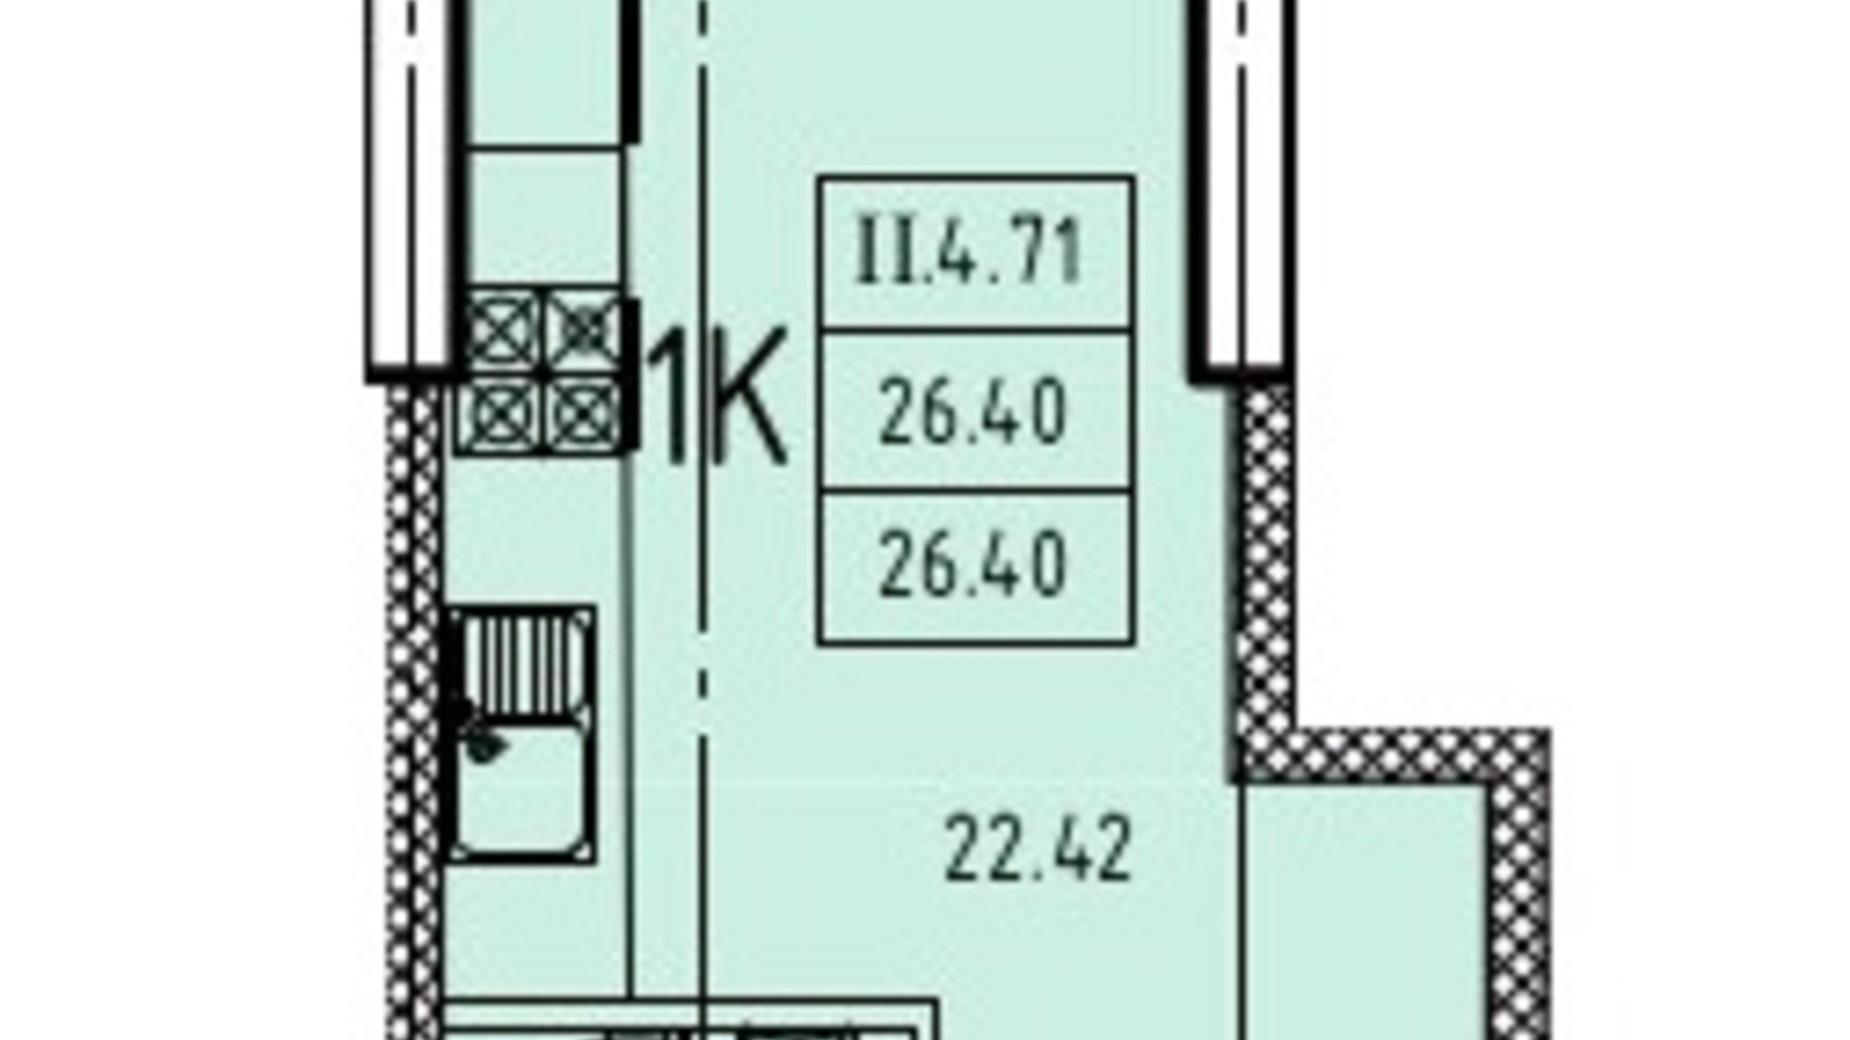 Планировка квартиры студии в ЖК Эллада 26.4 м², фото 646897